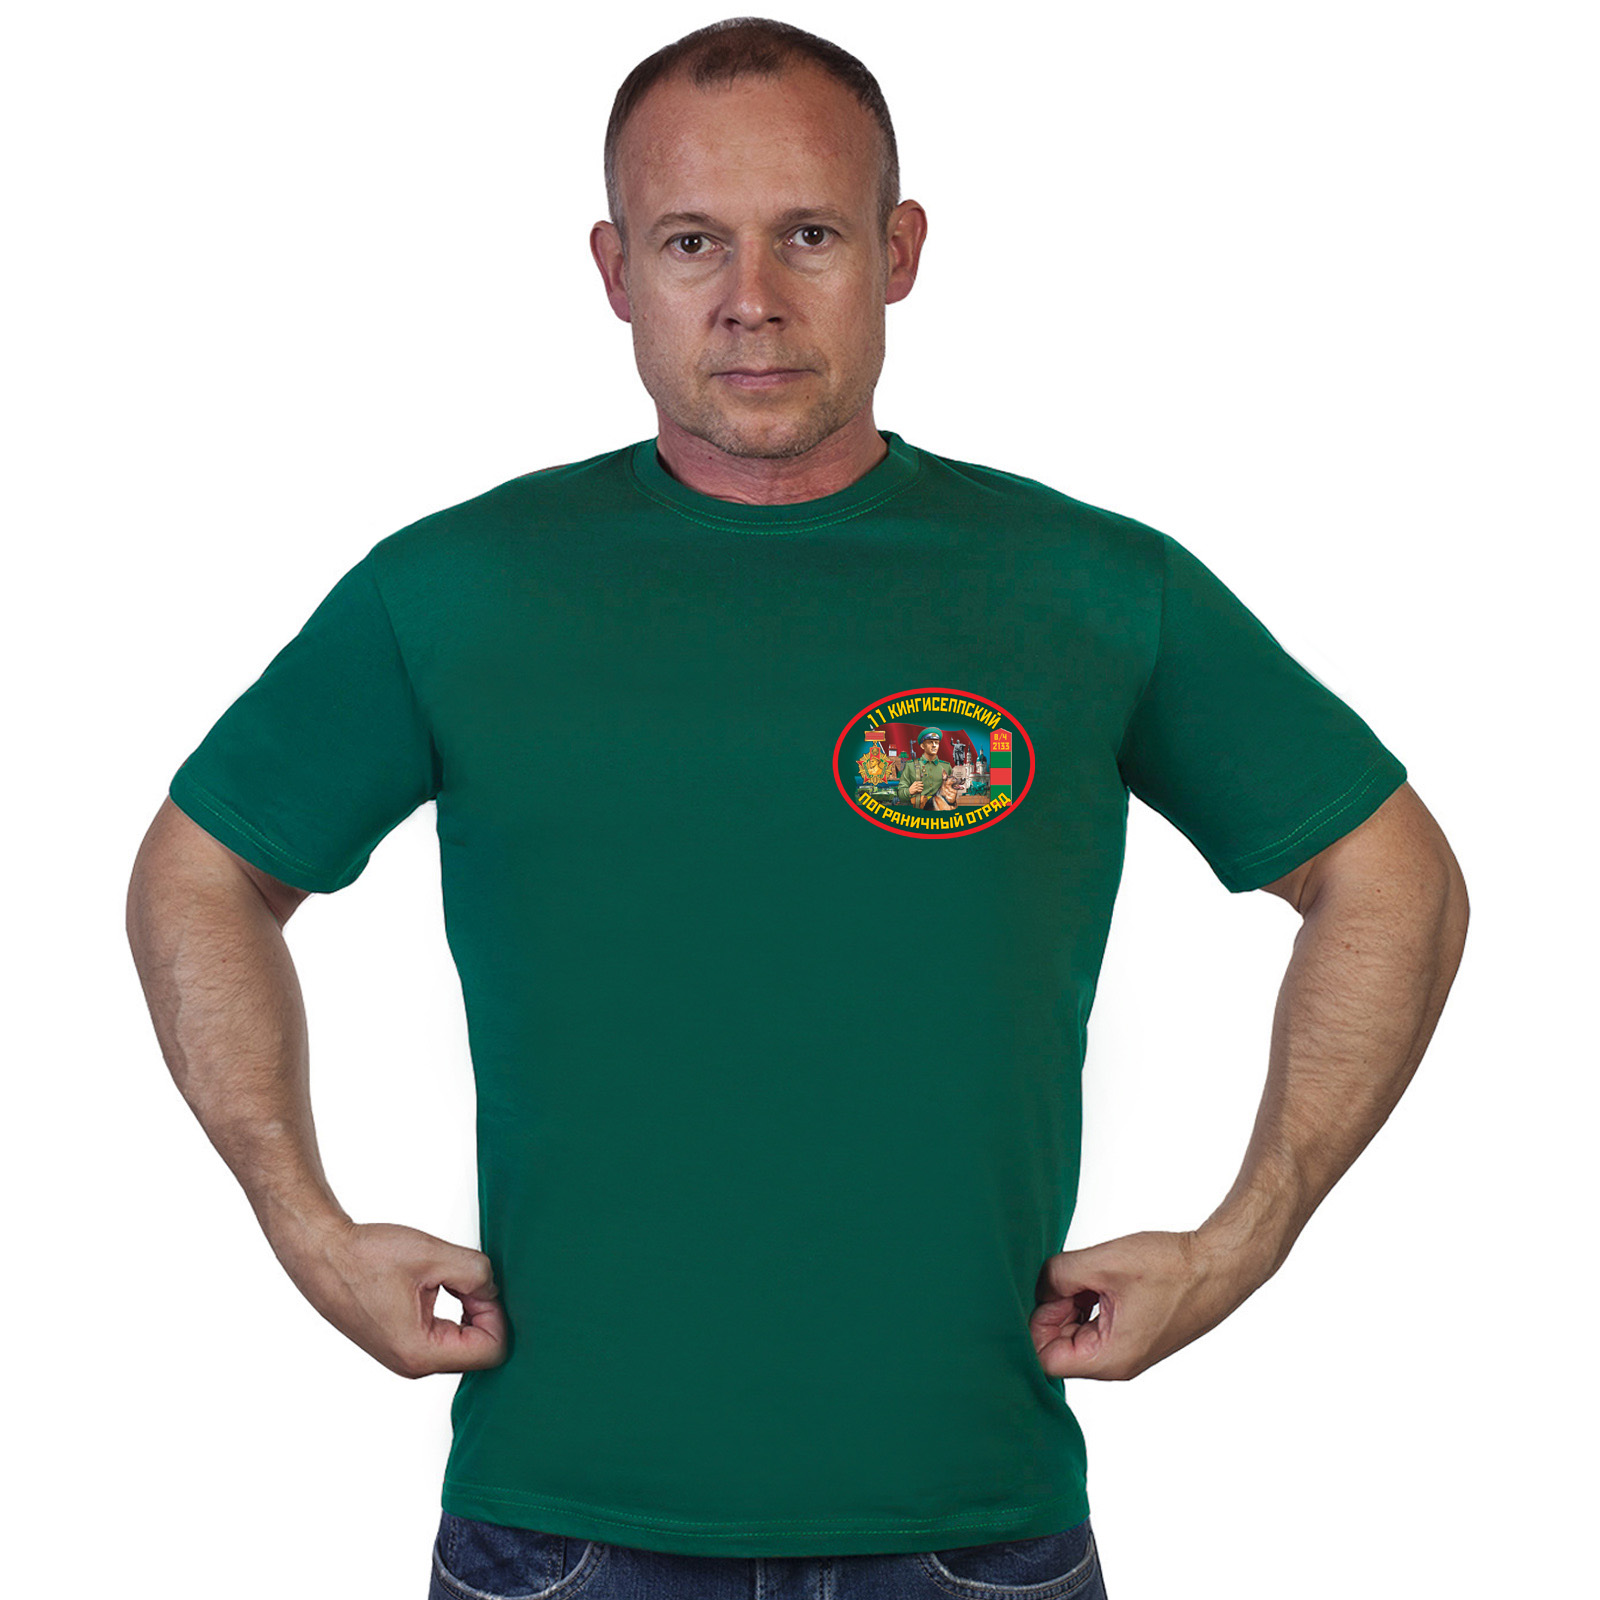 Мужская футболка 11 Кингисеппский пограничный отряд